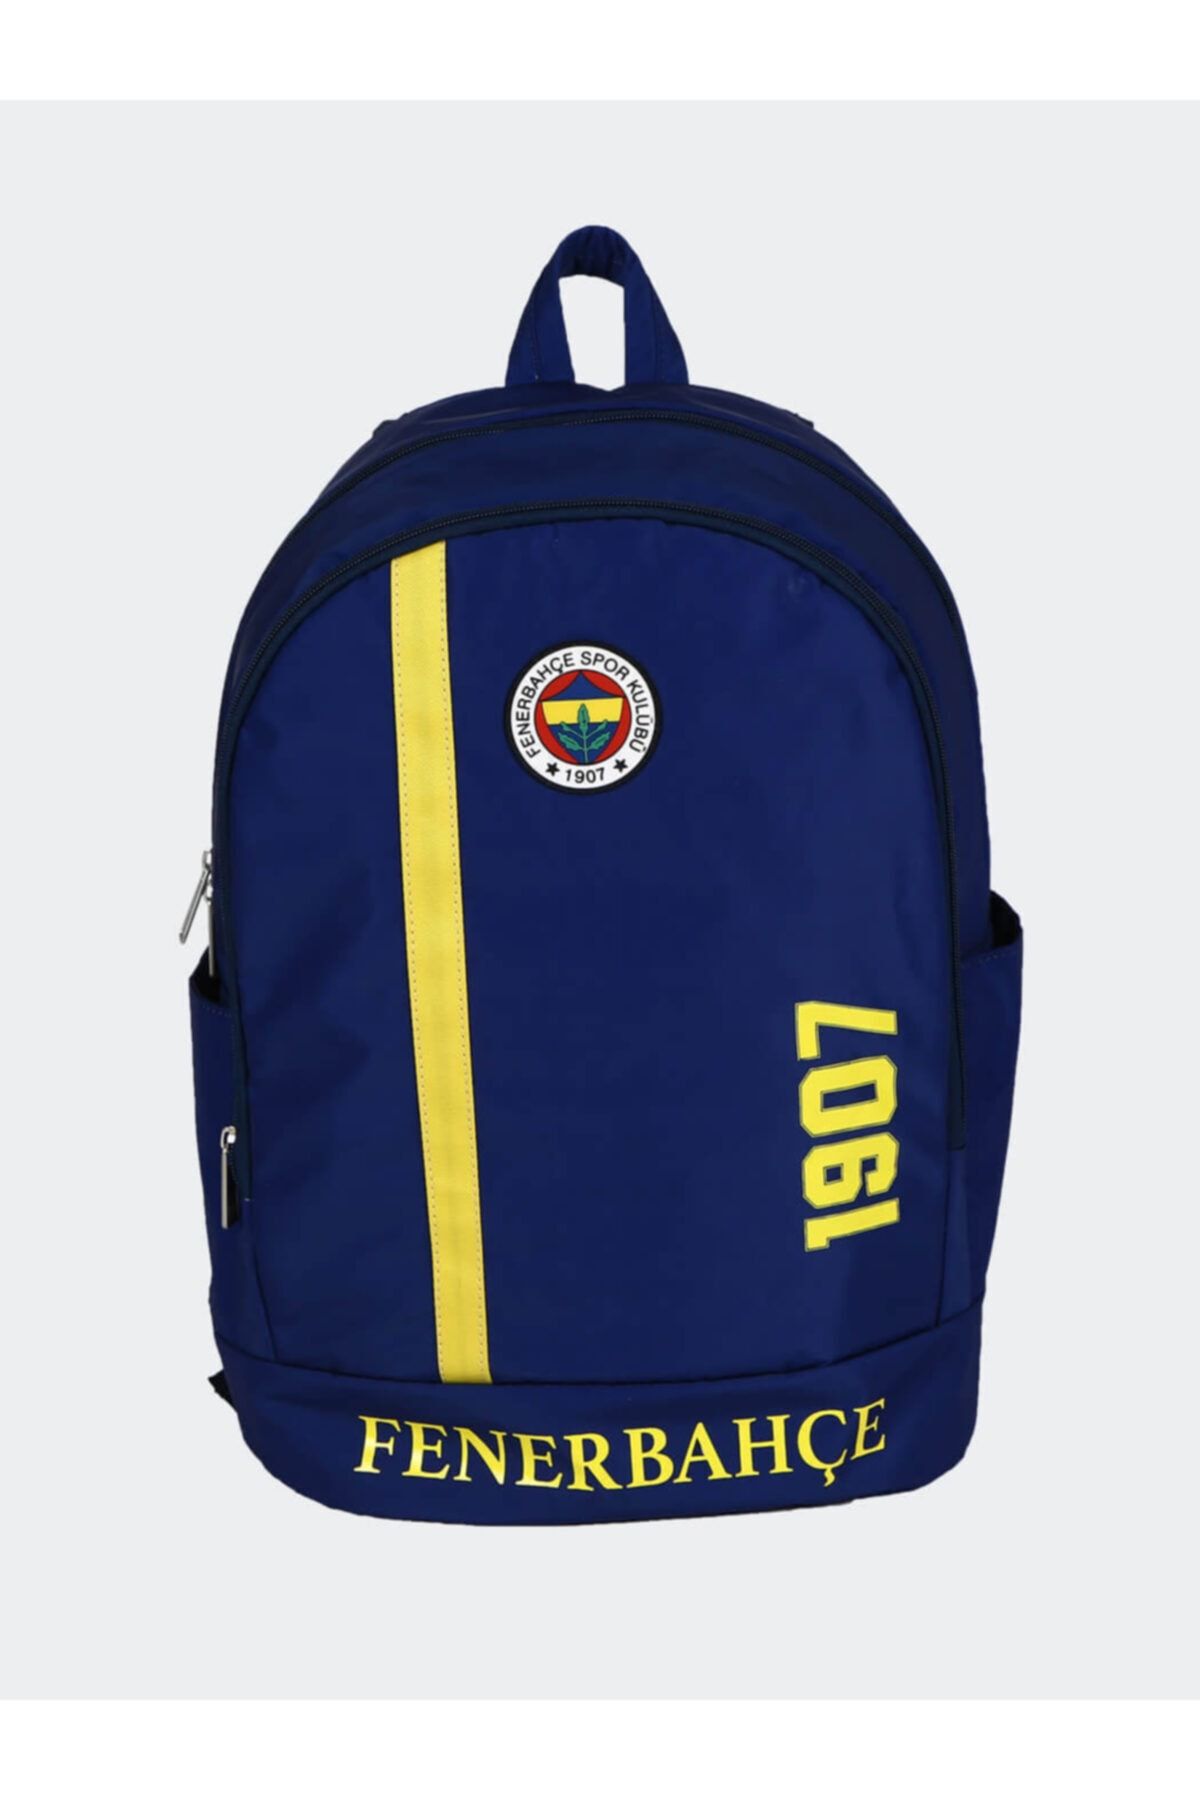 Fenerbahçe Fb Sırt Cantası 1907 Sarı Serıtlı Lac